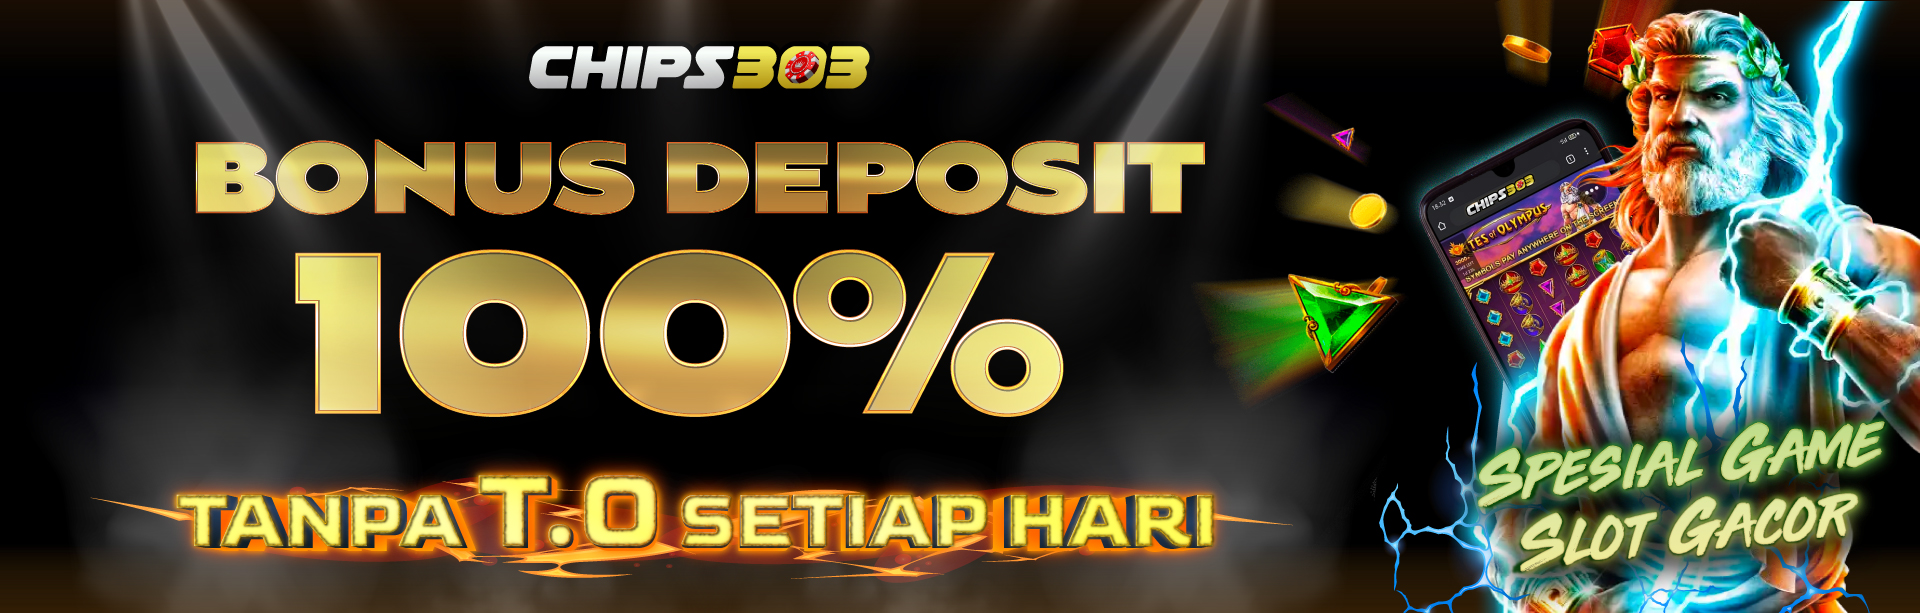 Bonus DP 100% Tanpa TO CHIPS303